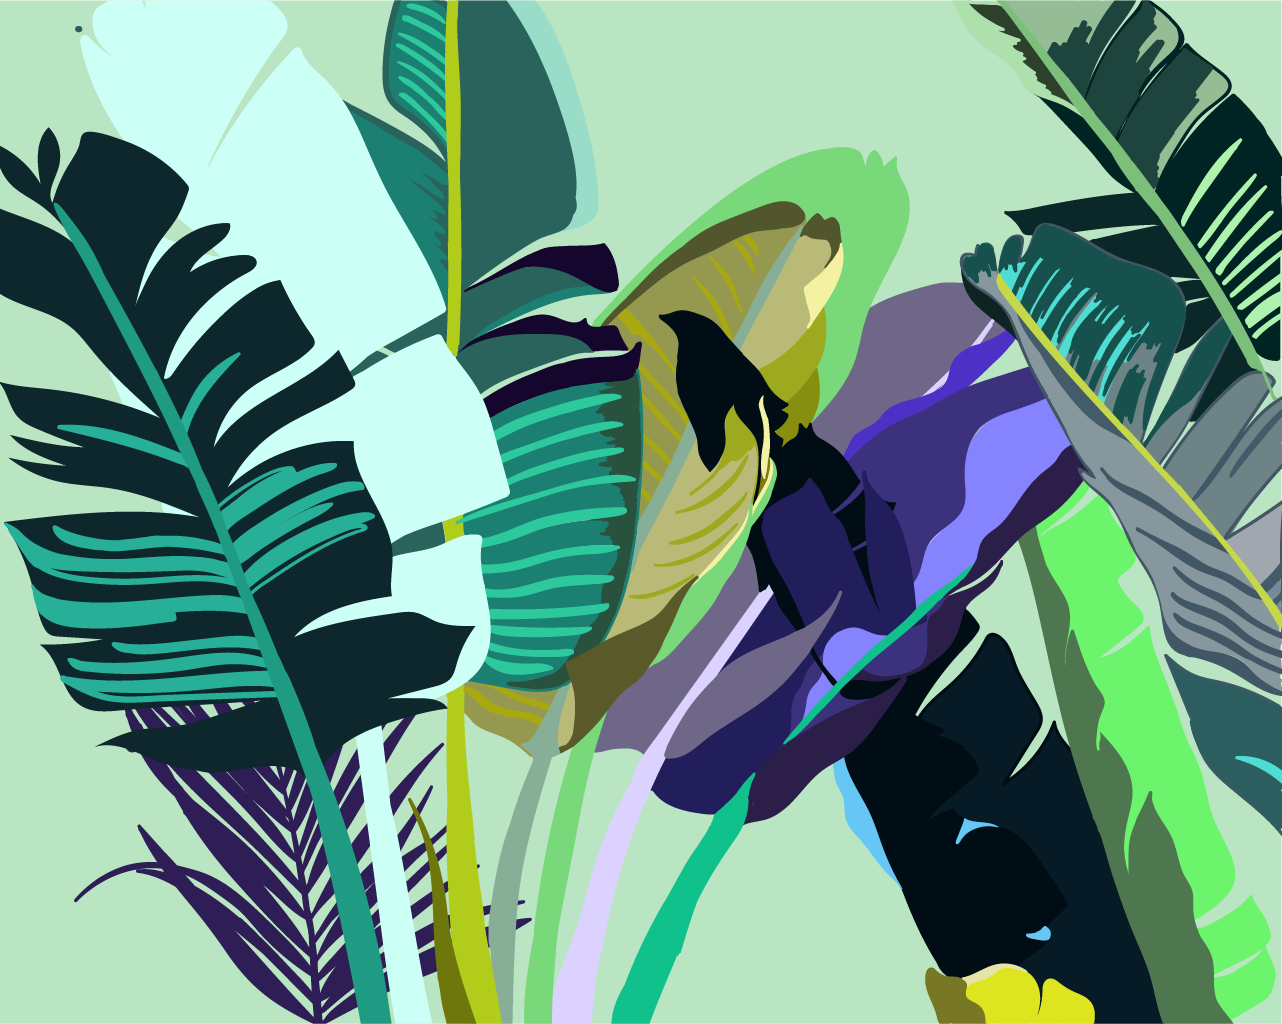 Ilustración digital de las hojas de una planta tropical, con tonalidades azules, violetas y colores fluorescentes, realizada en adobe illustrator.